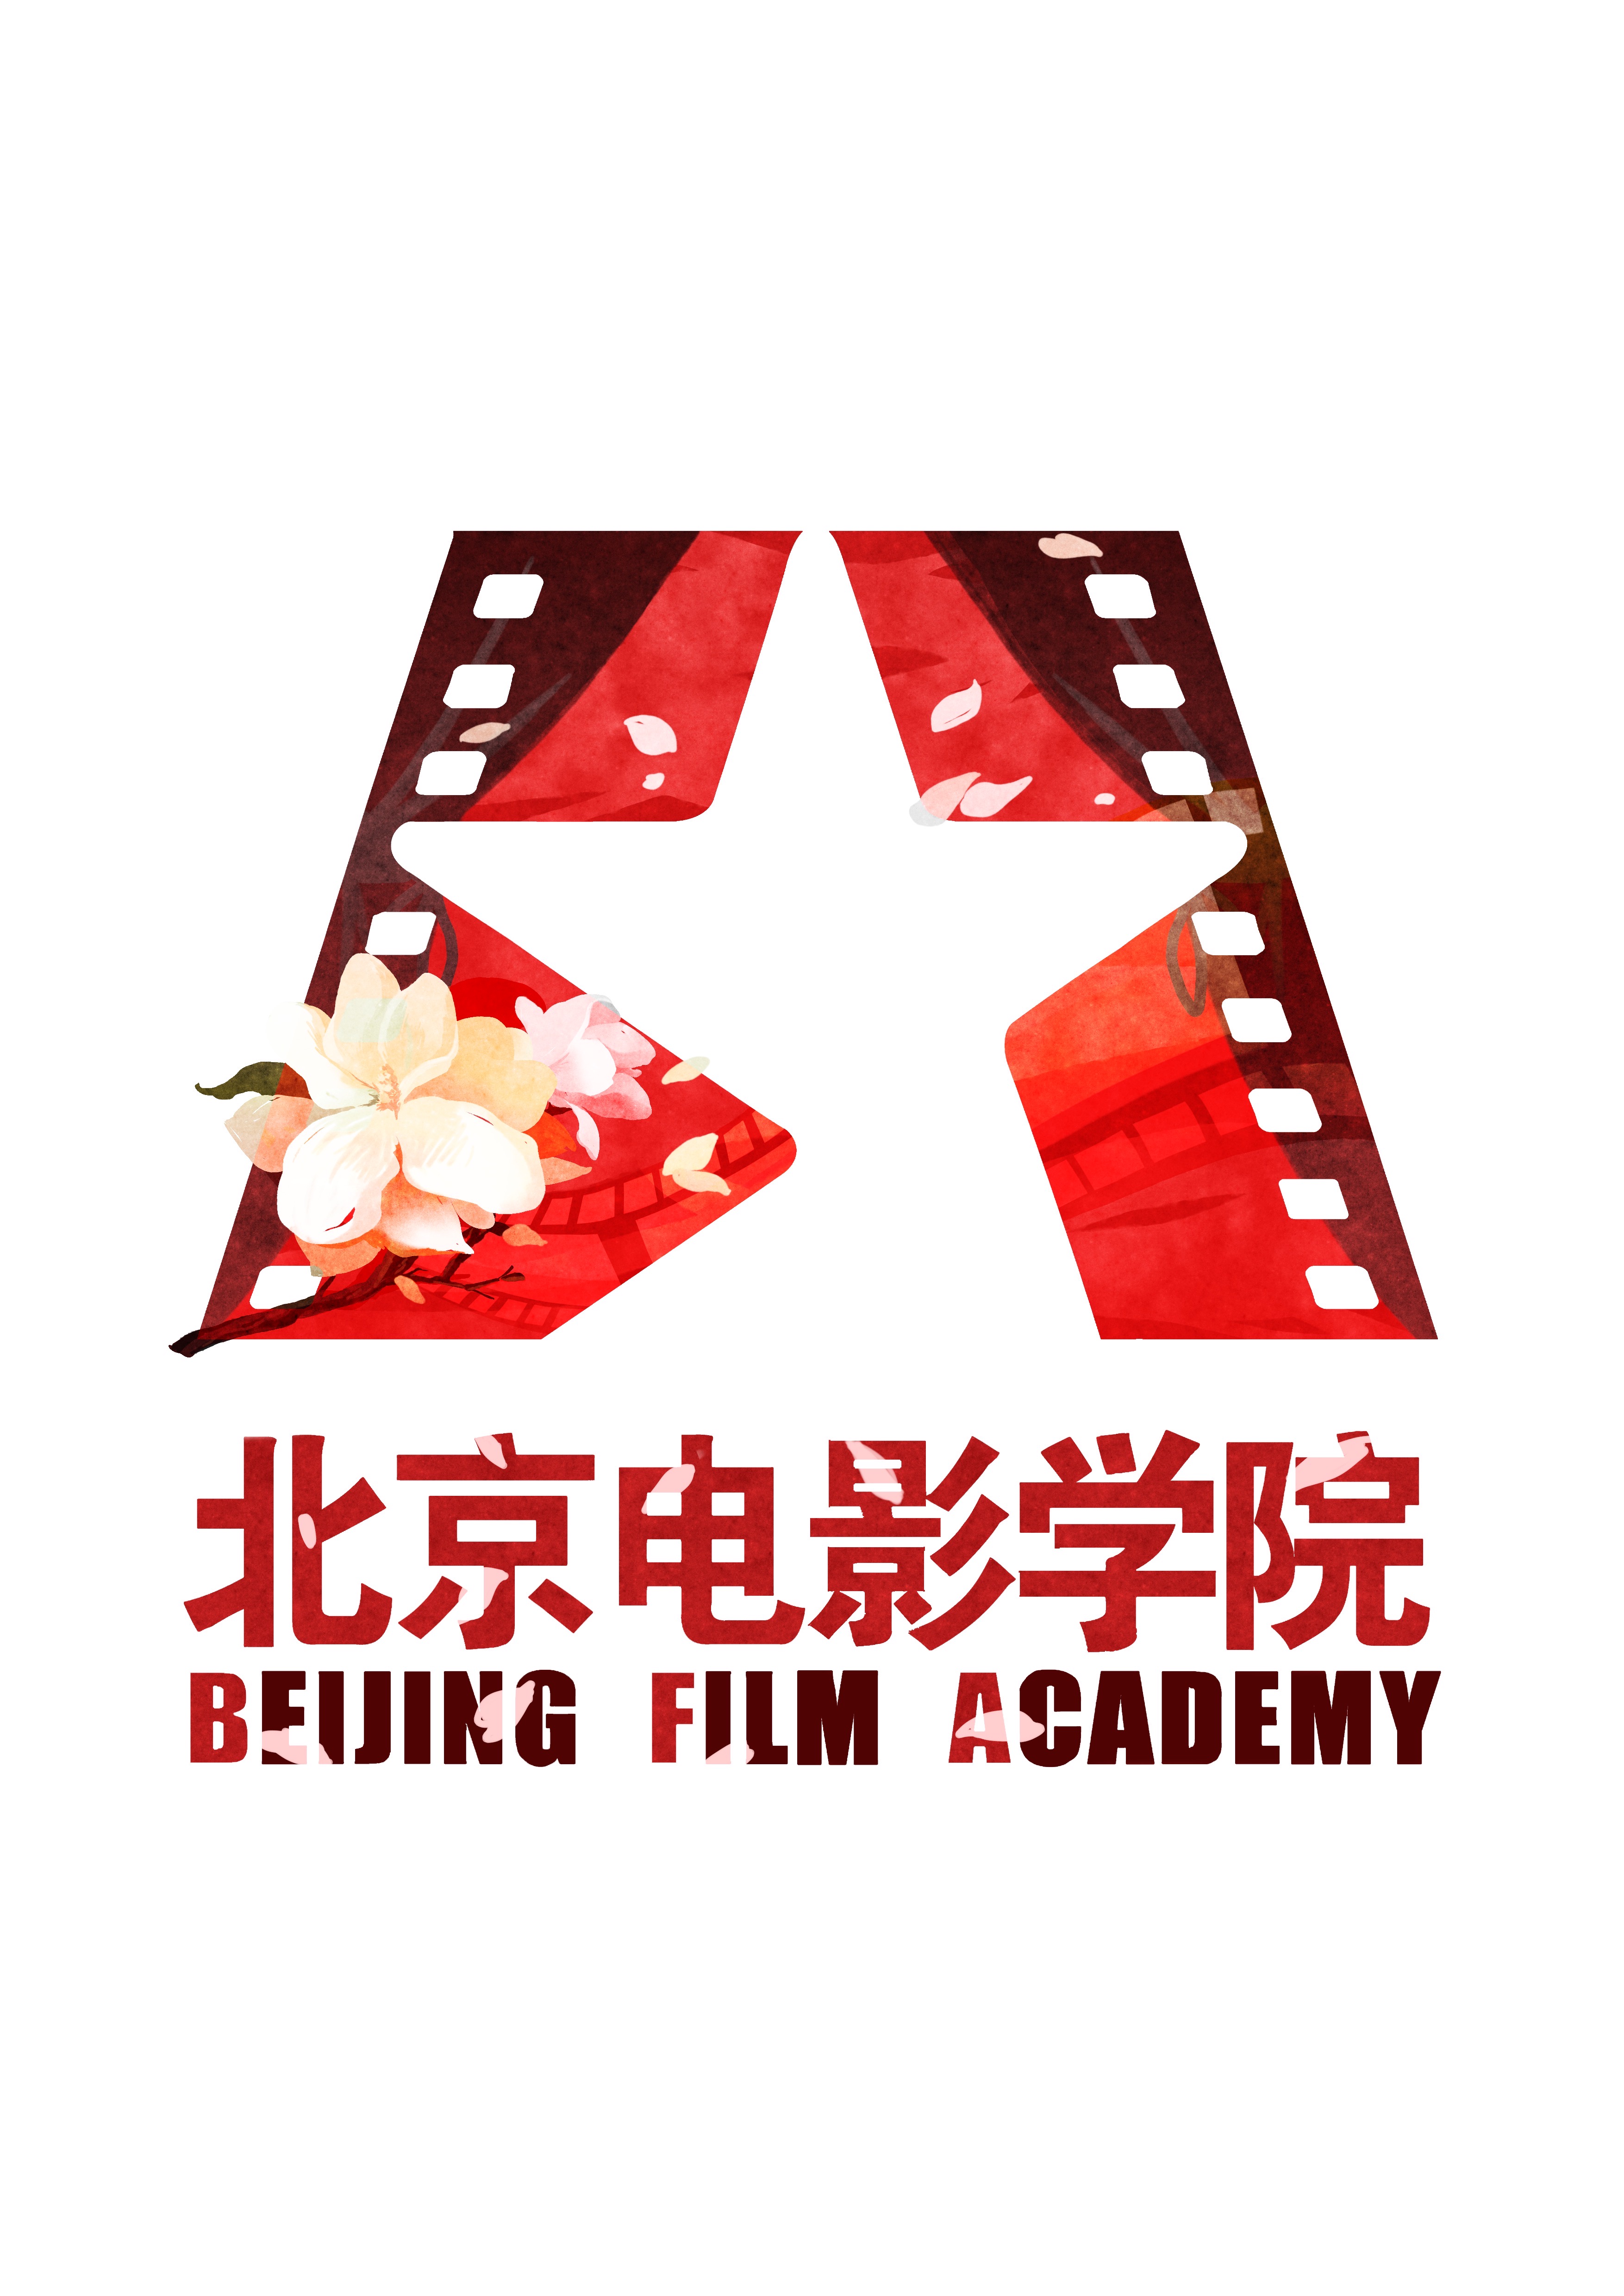 北京电影学院壁纸文字图片